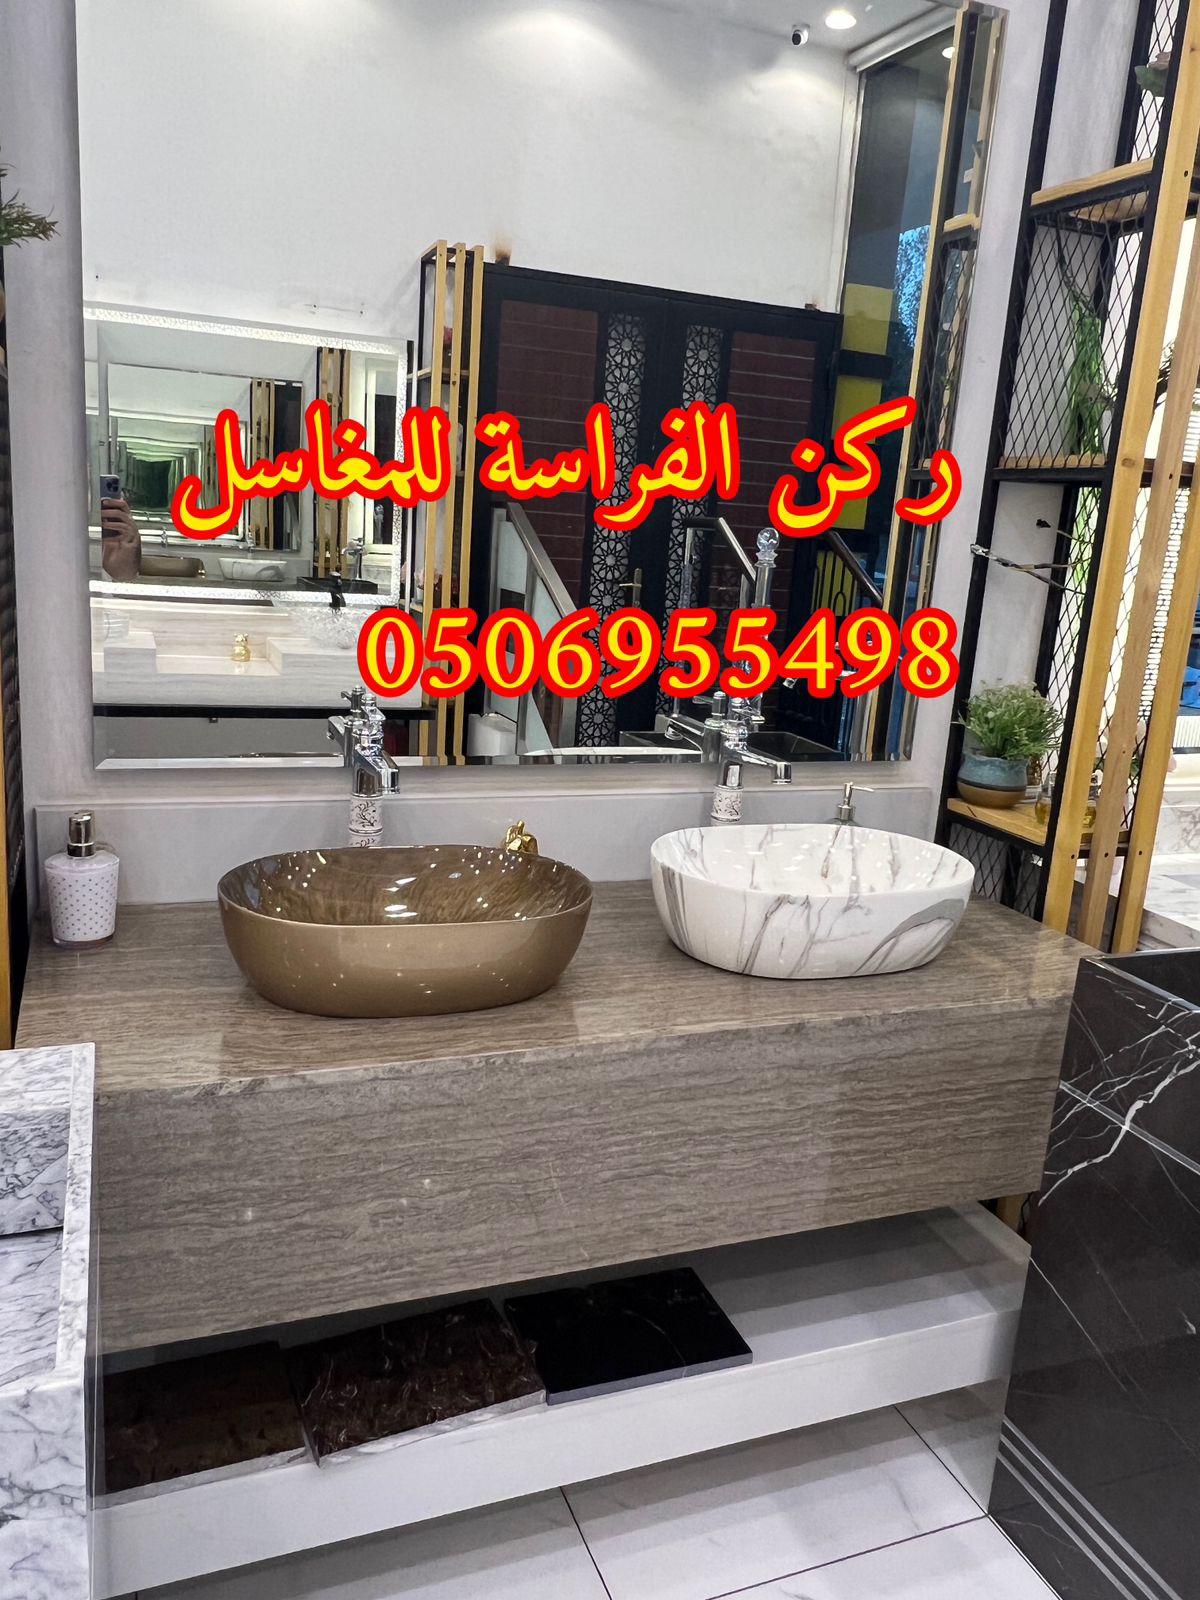 تركيب مغاسل الرخام في الرياض,0506955498 829657707